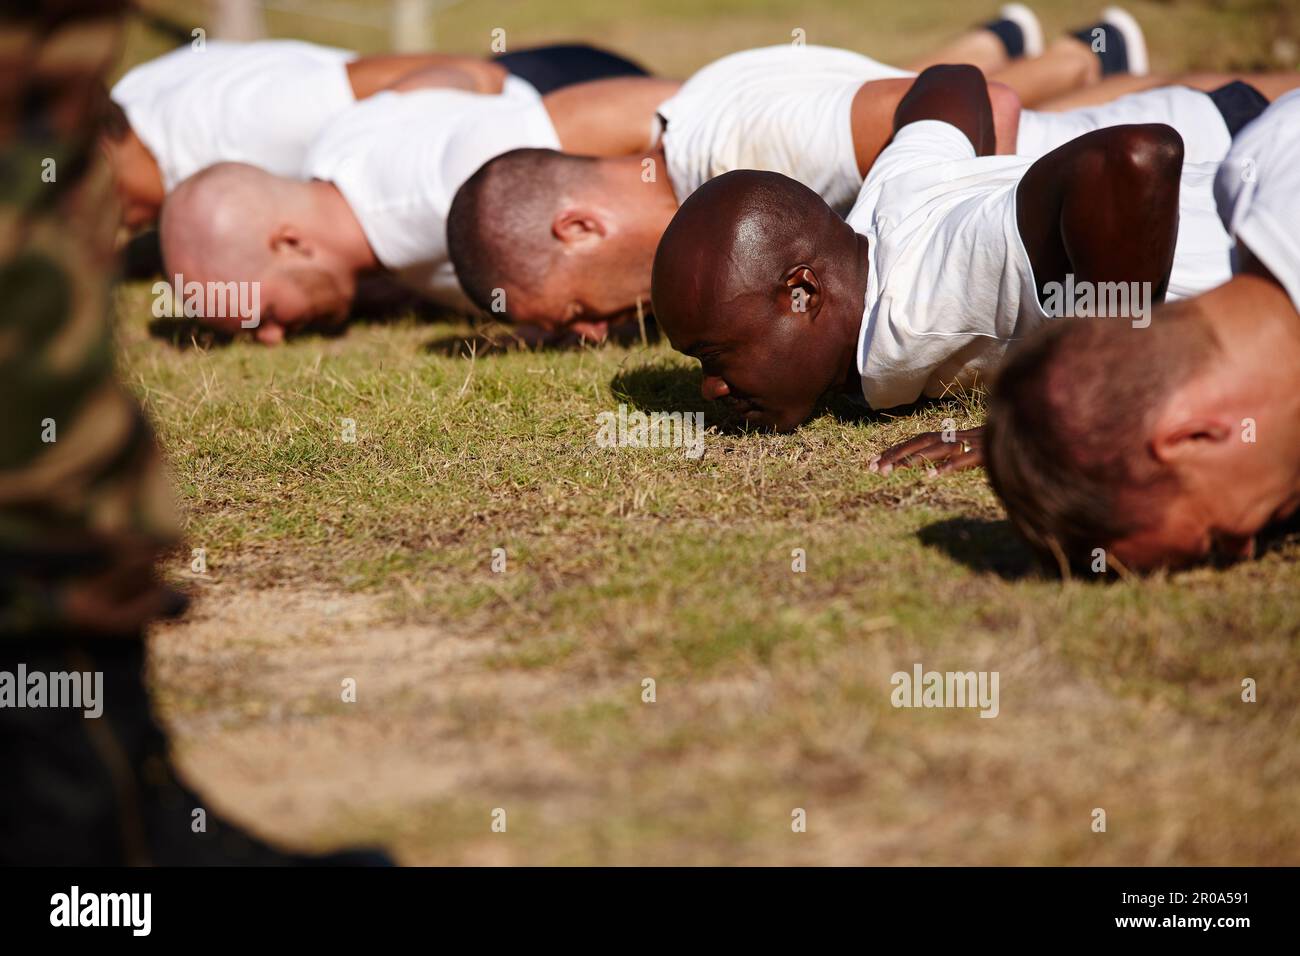 Spingiti al limite di bootcamp. un gruppo di uomini che fanno push-up in un bootcamp militare. Foto Stock